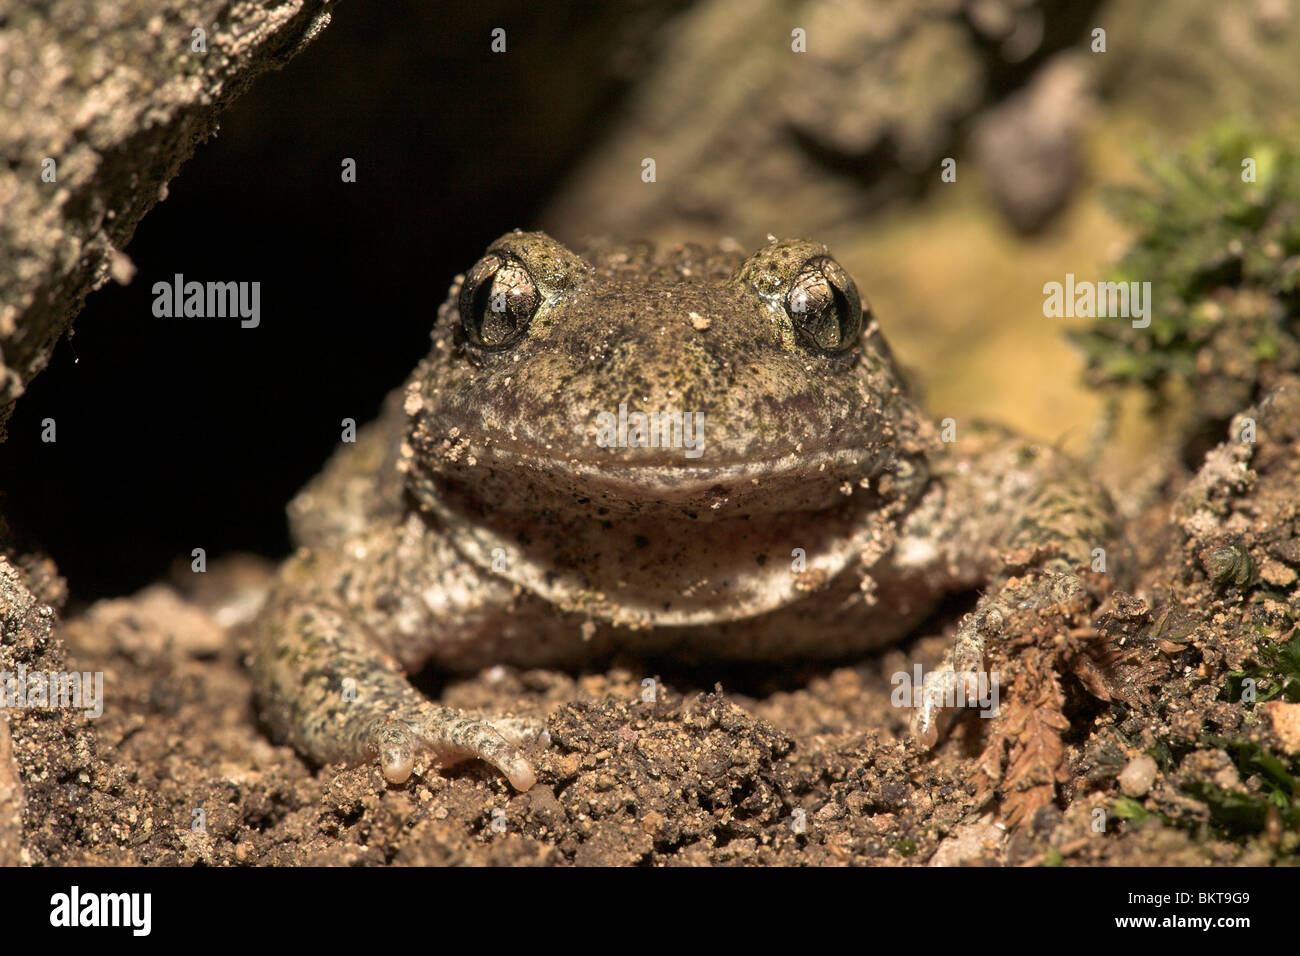 Ritratto frontale di un comune ostetrica toad in un foro sotto un albero Foto Stock